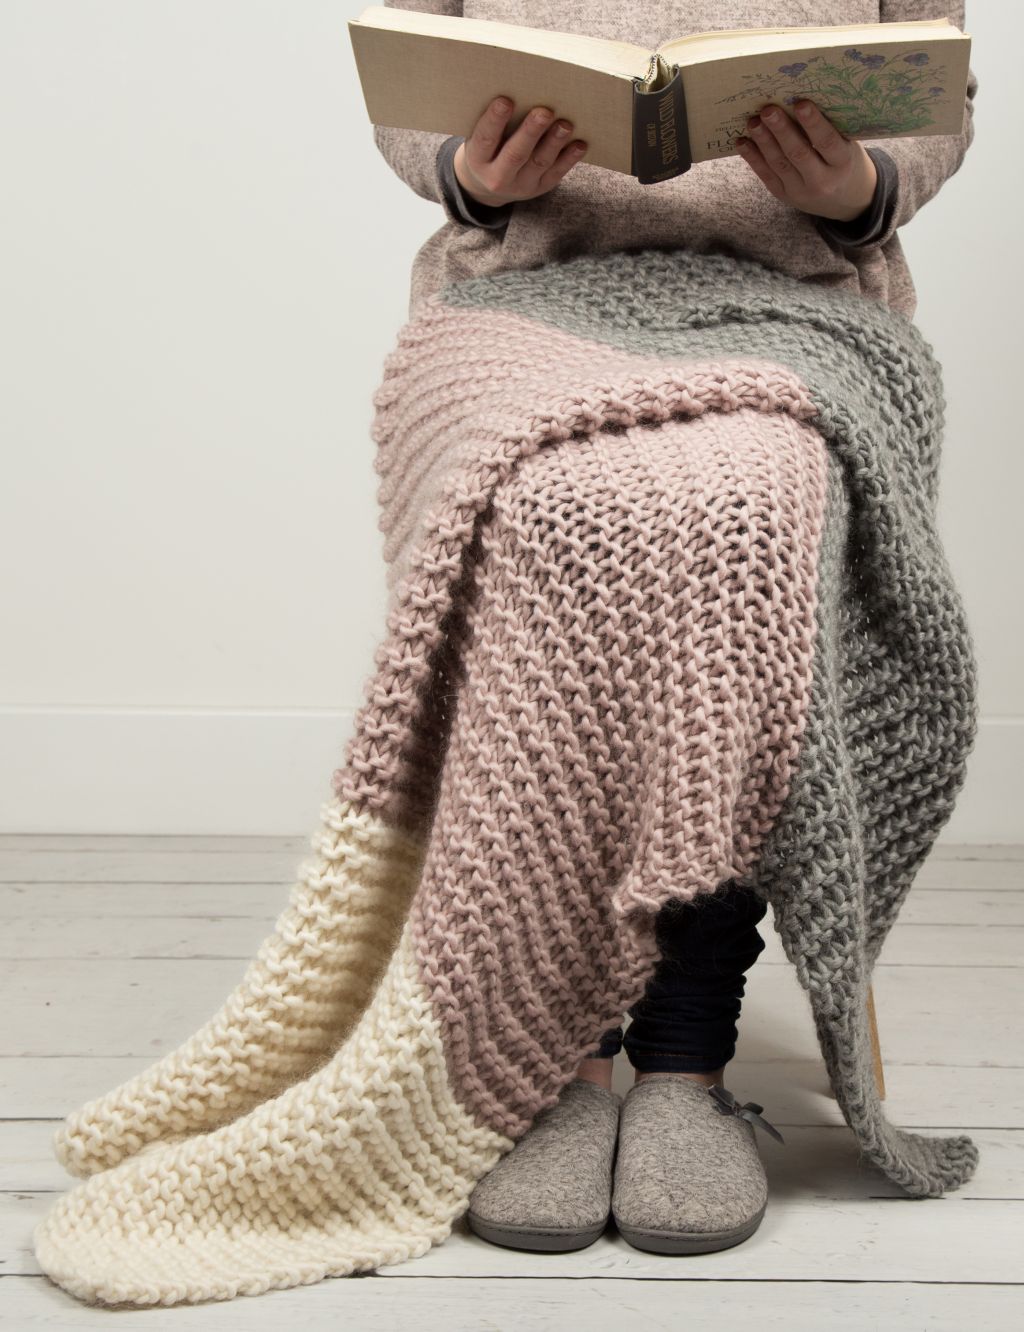 Hannah's Blanket Knitting Kit